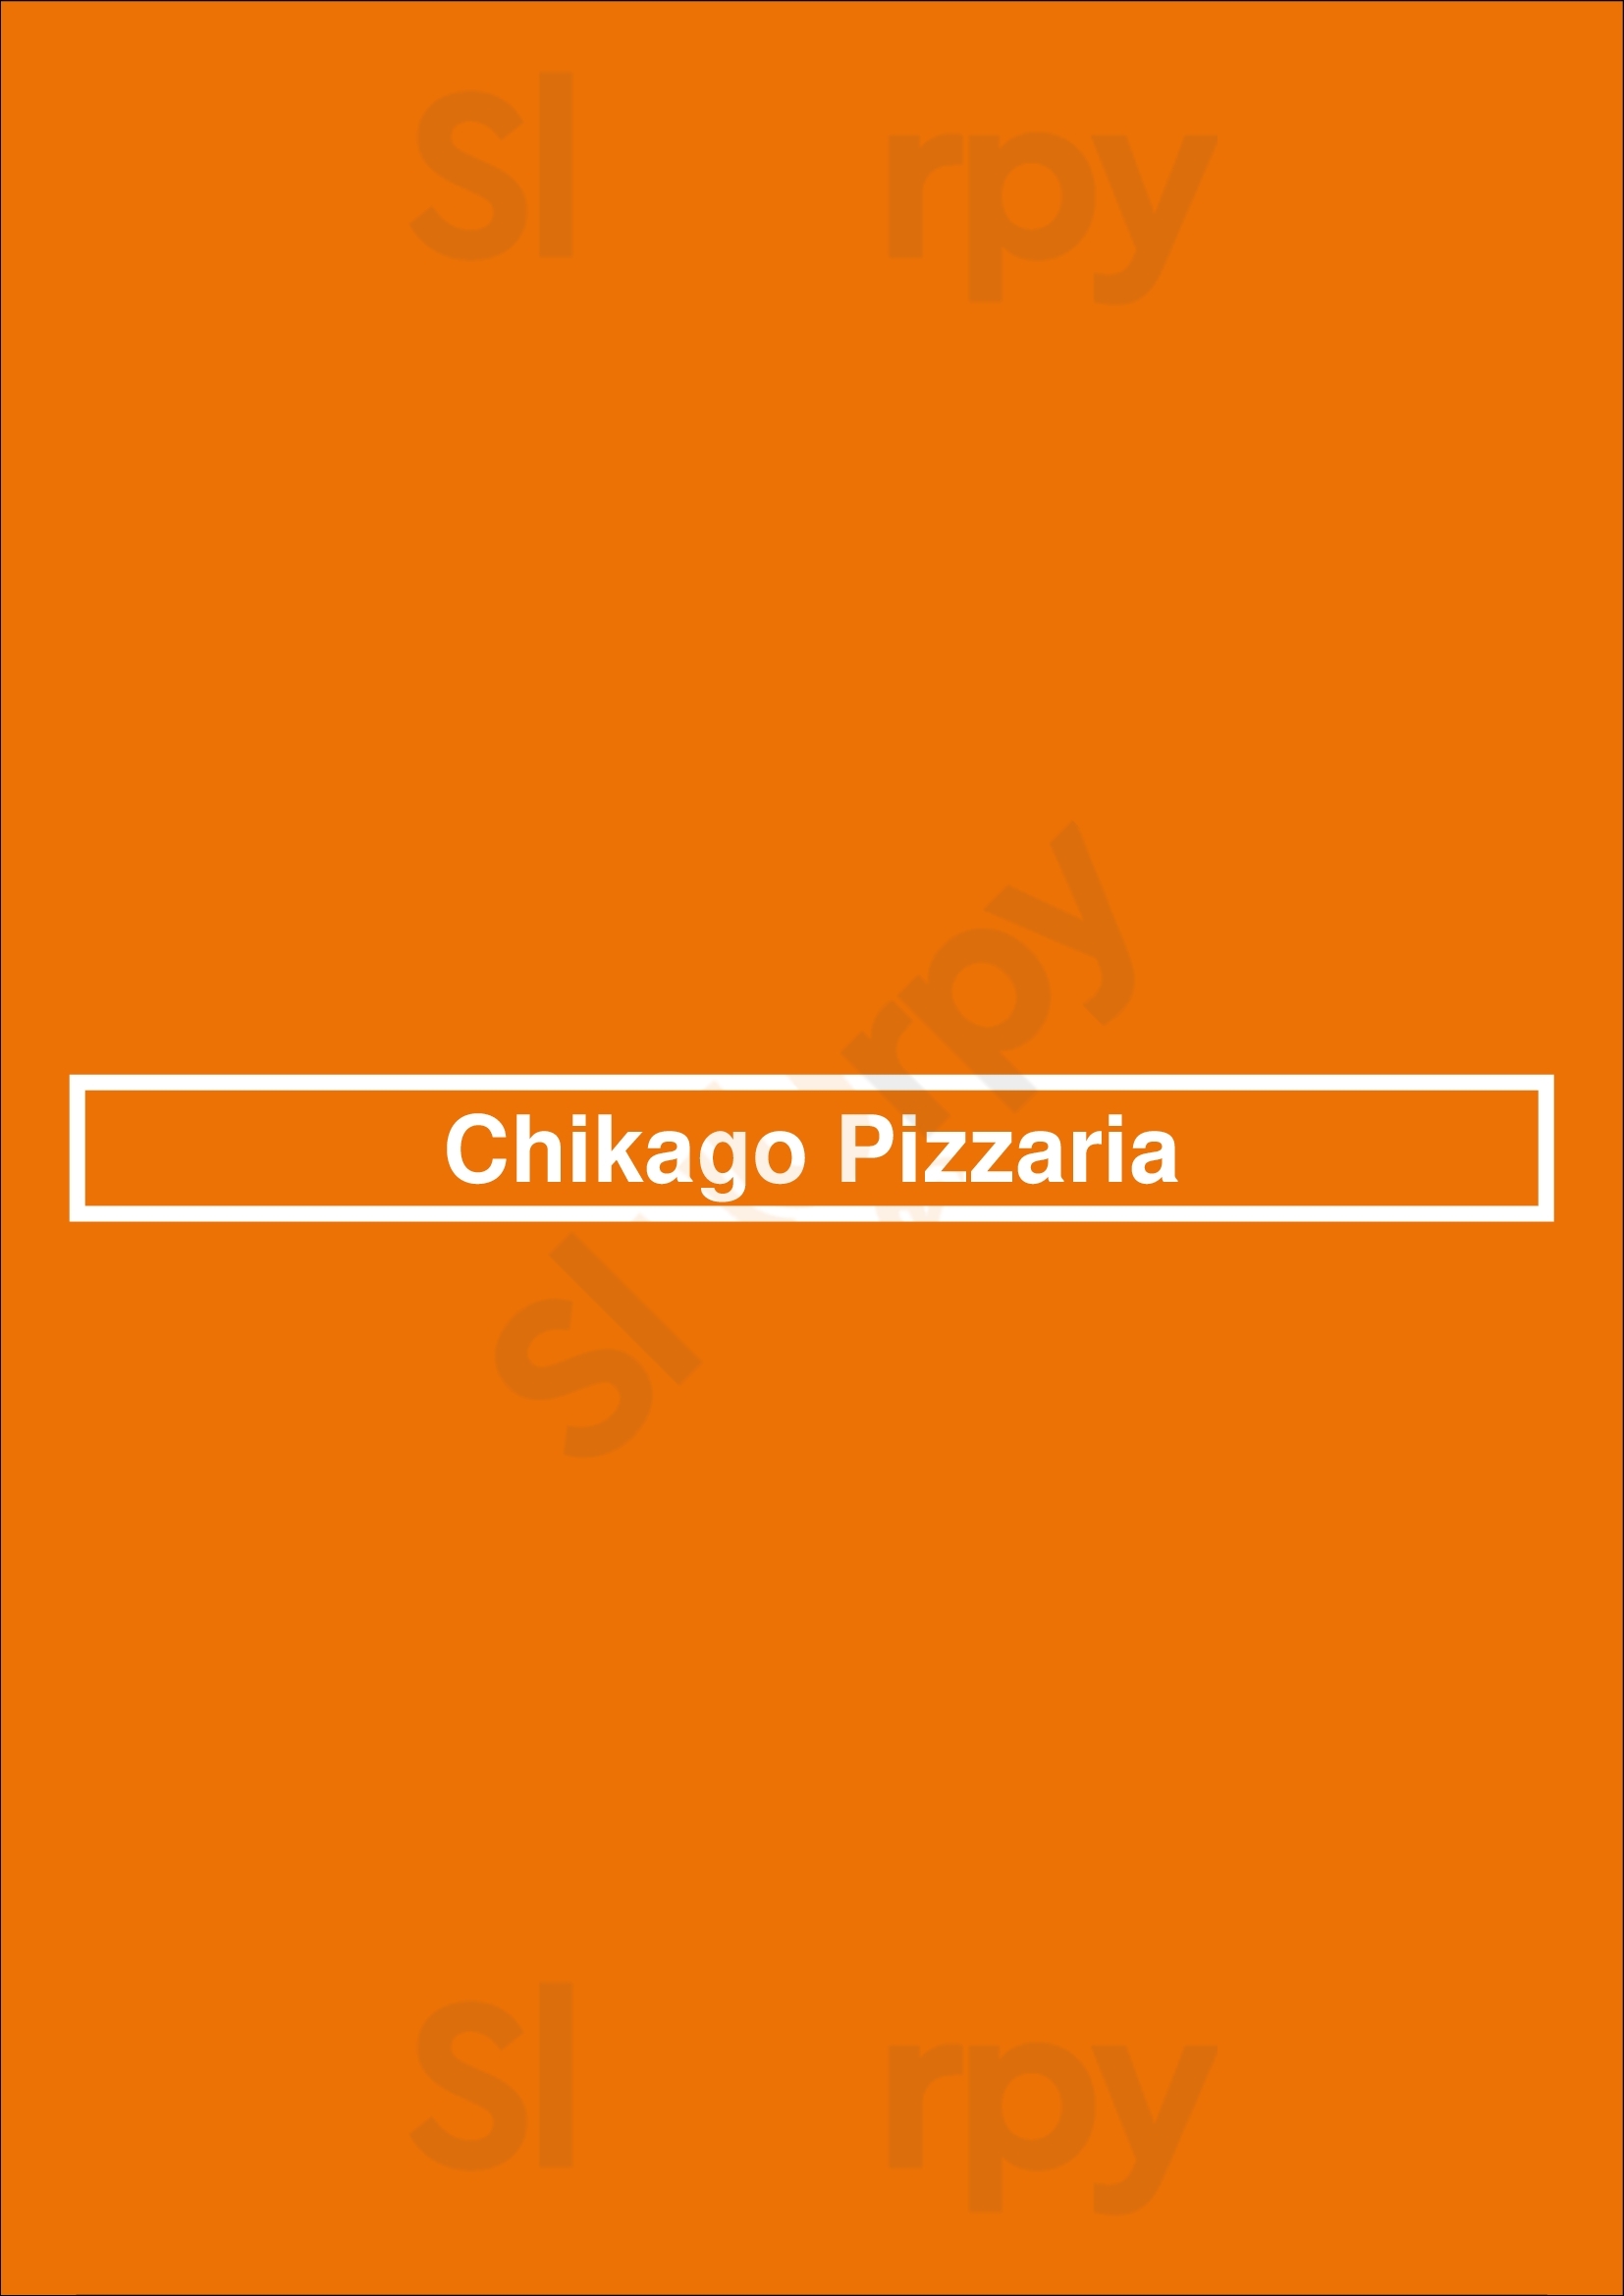 Chikago Pizzaria Chicago Menu - 1